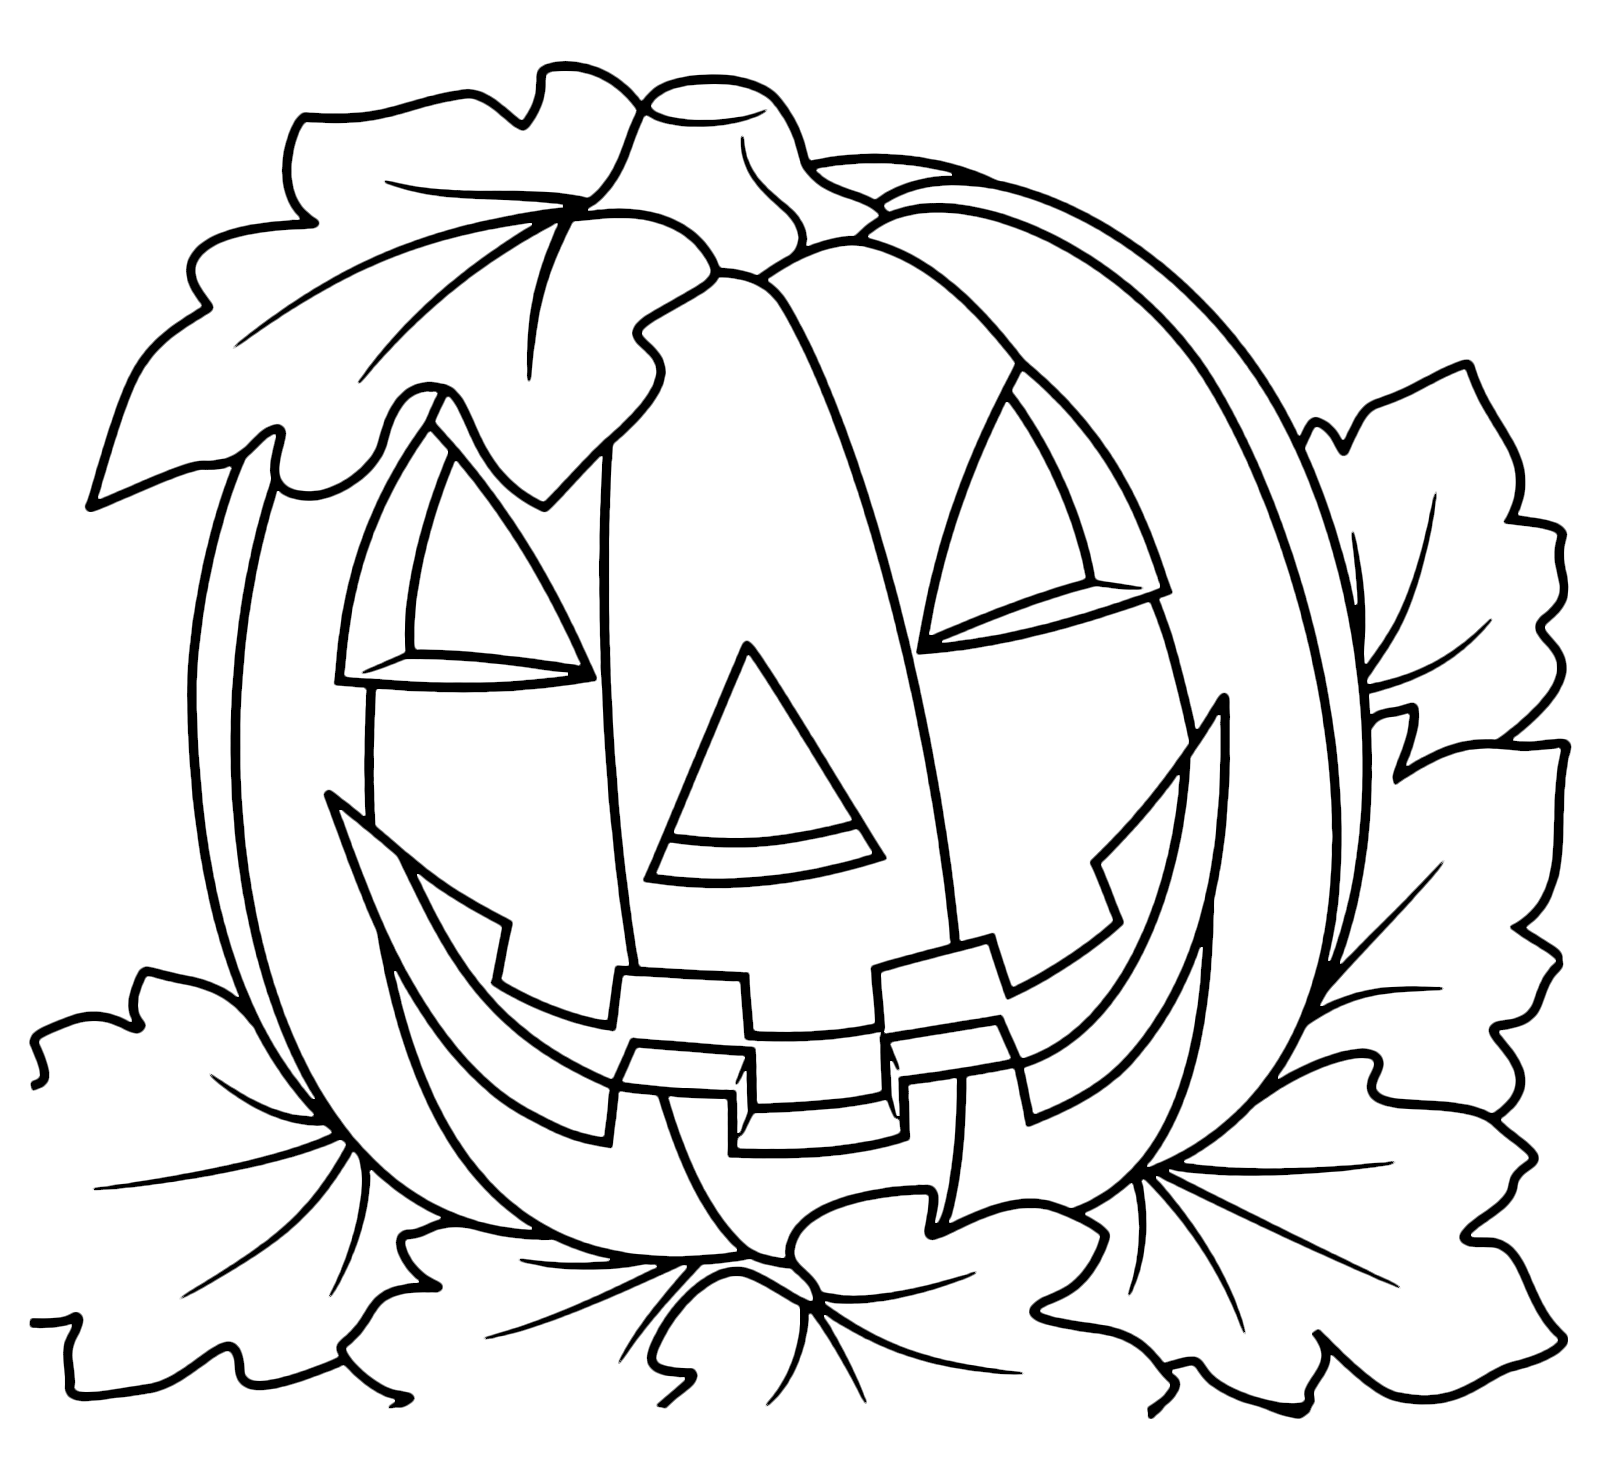 Halloween - Una zucca di Halloween con le foglie attaccate